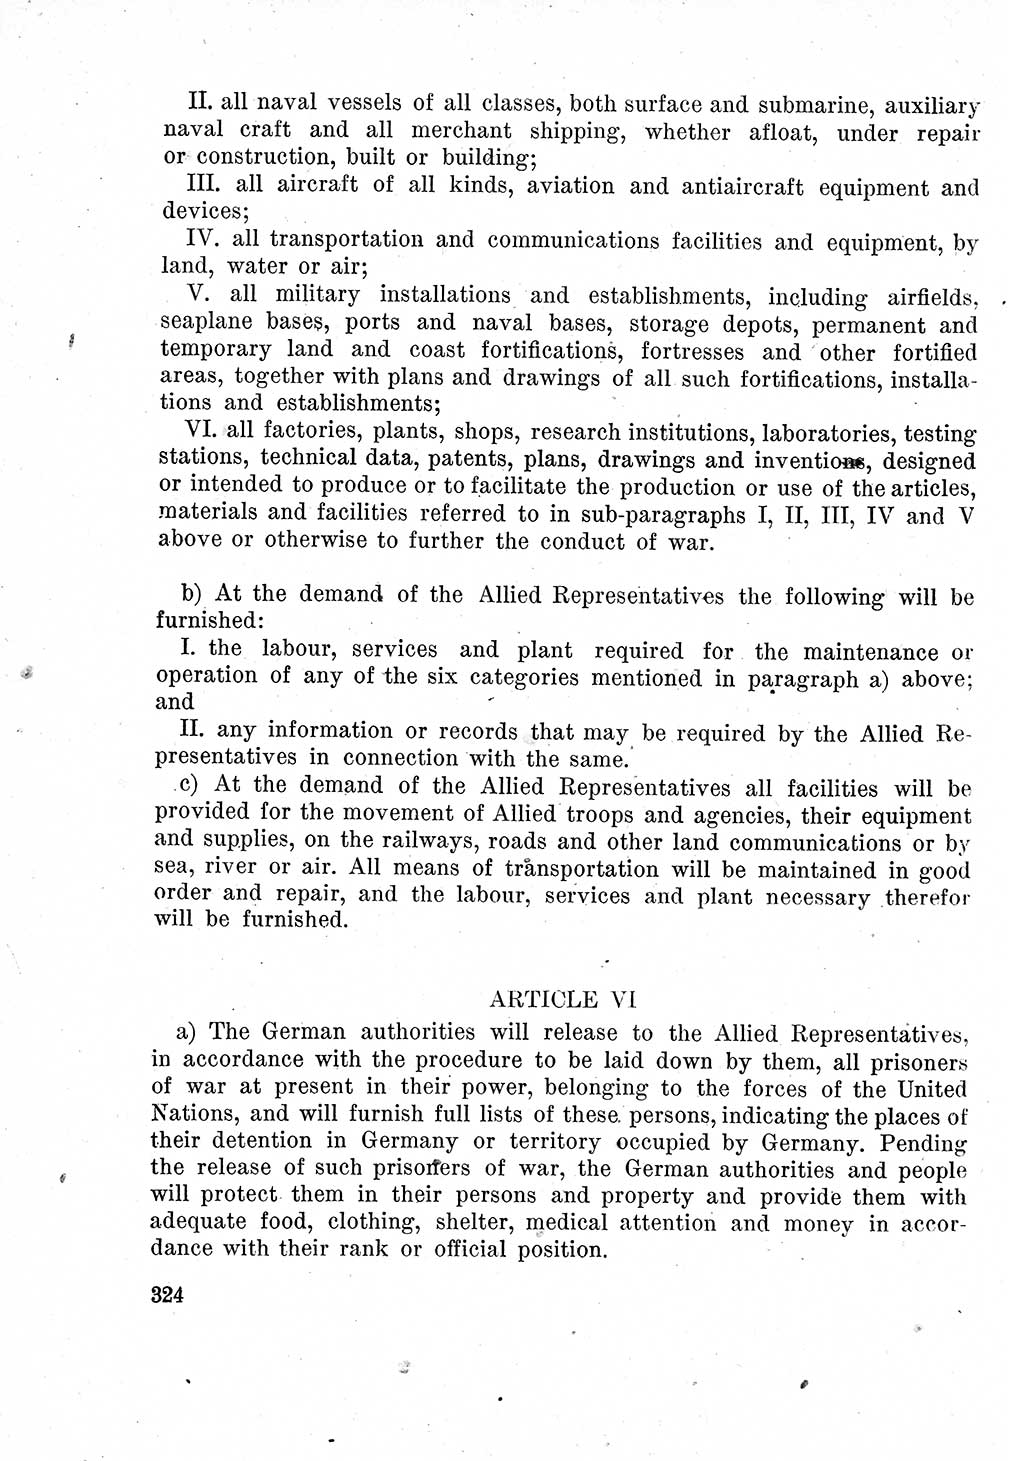 Das Recht der Besatzungsmacht (Deutschland), Proklamationen, Deklerationen, Verordnungen, Gesetze und Bekanntmachungen 1947, Seite 324 (R. Bes. Dtl. 1947, S. 324)